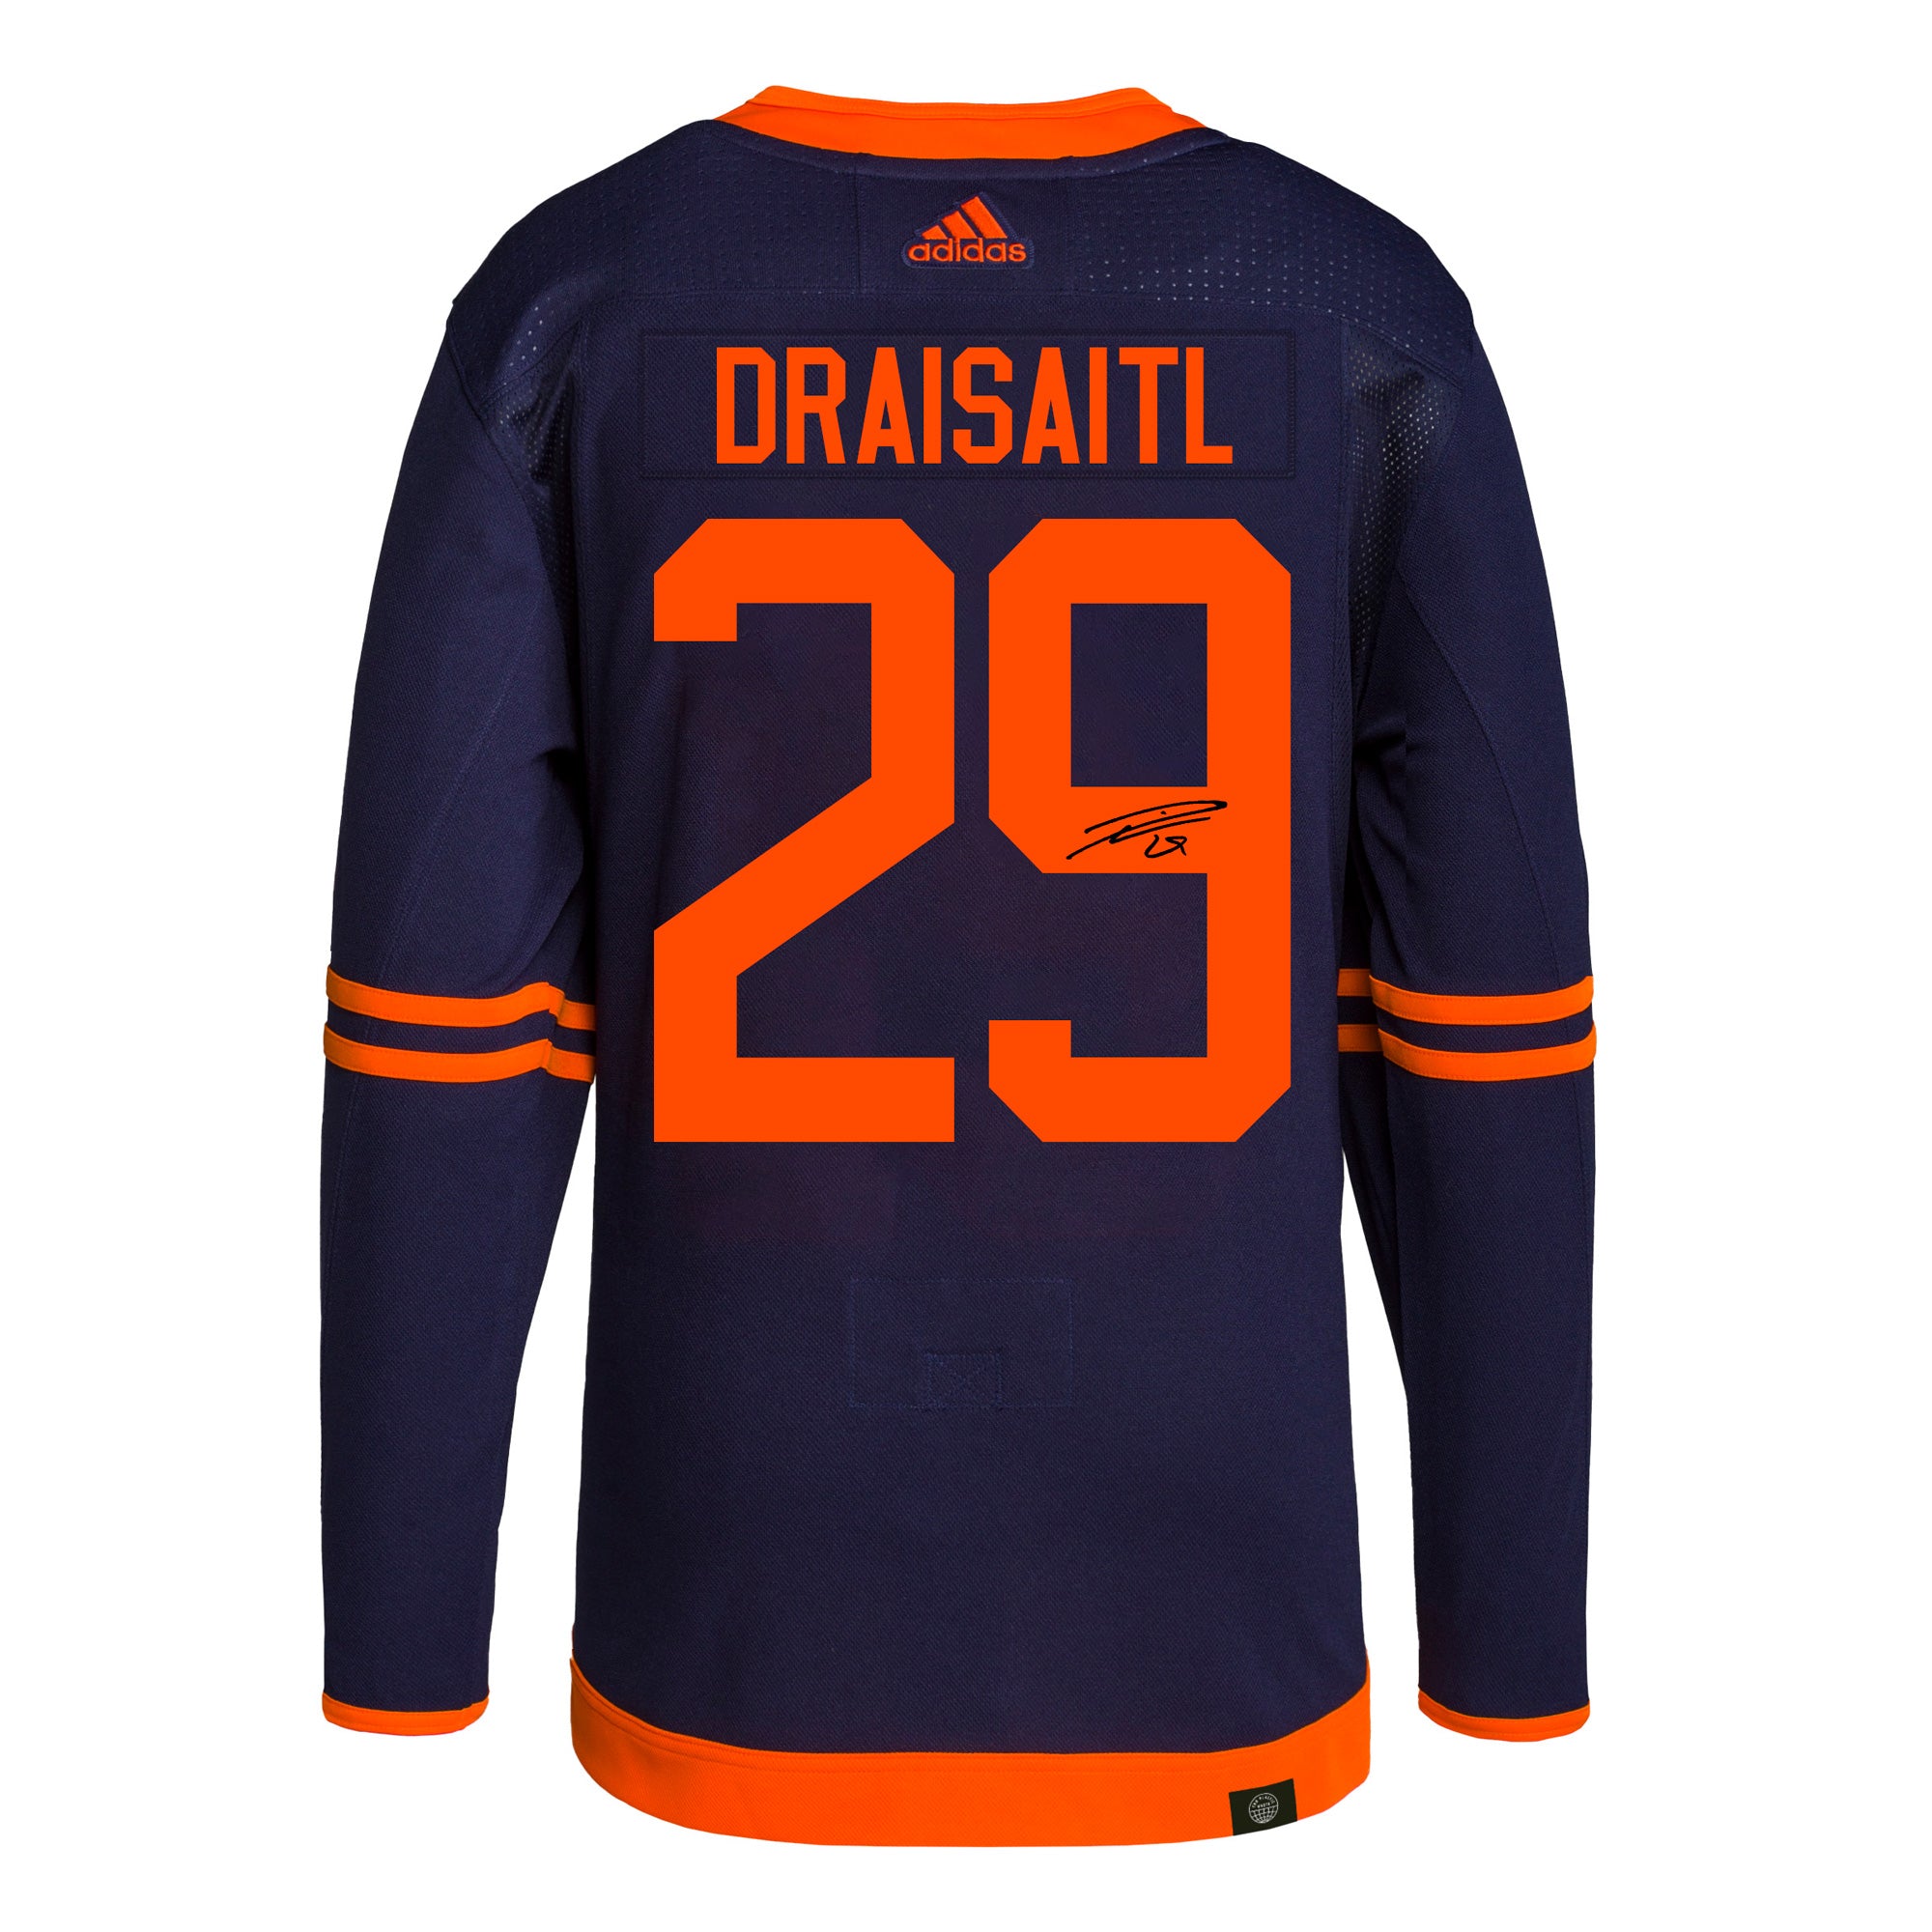 Leon Draisaitl #29 - Autographed 2021-22 Edmonton Oilers vs